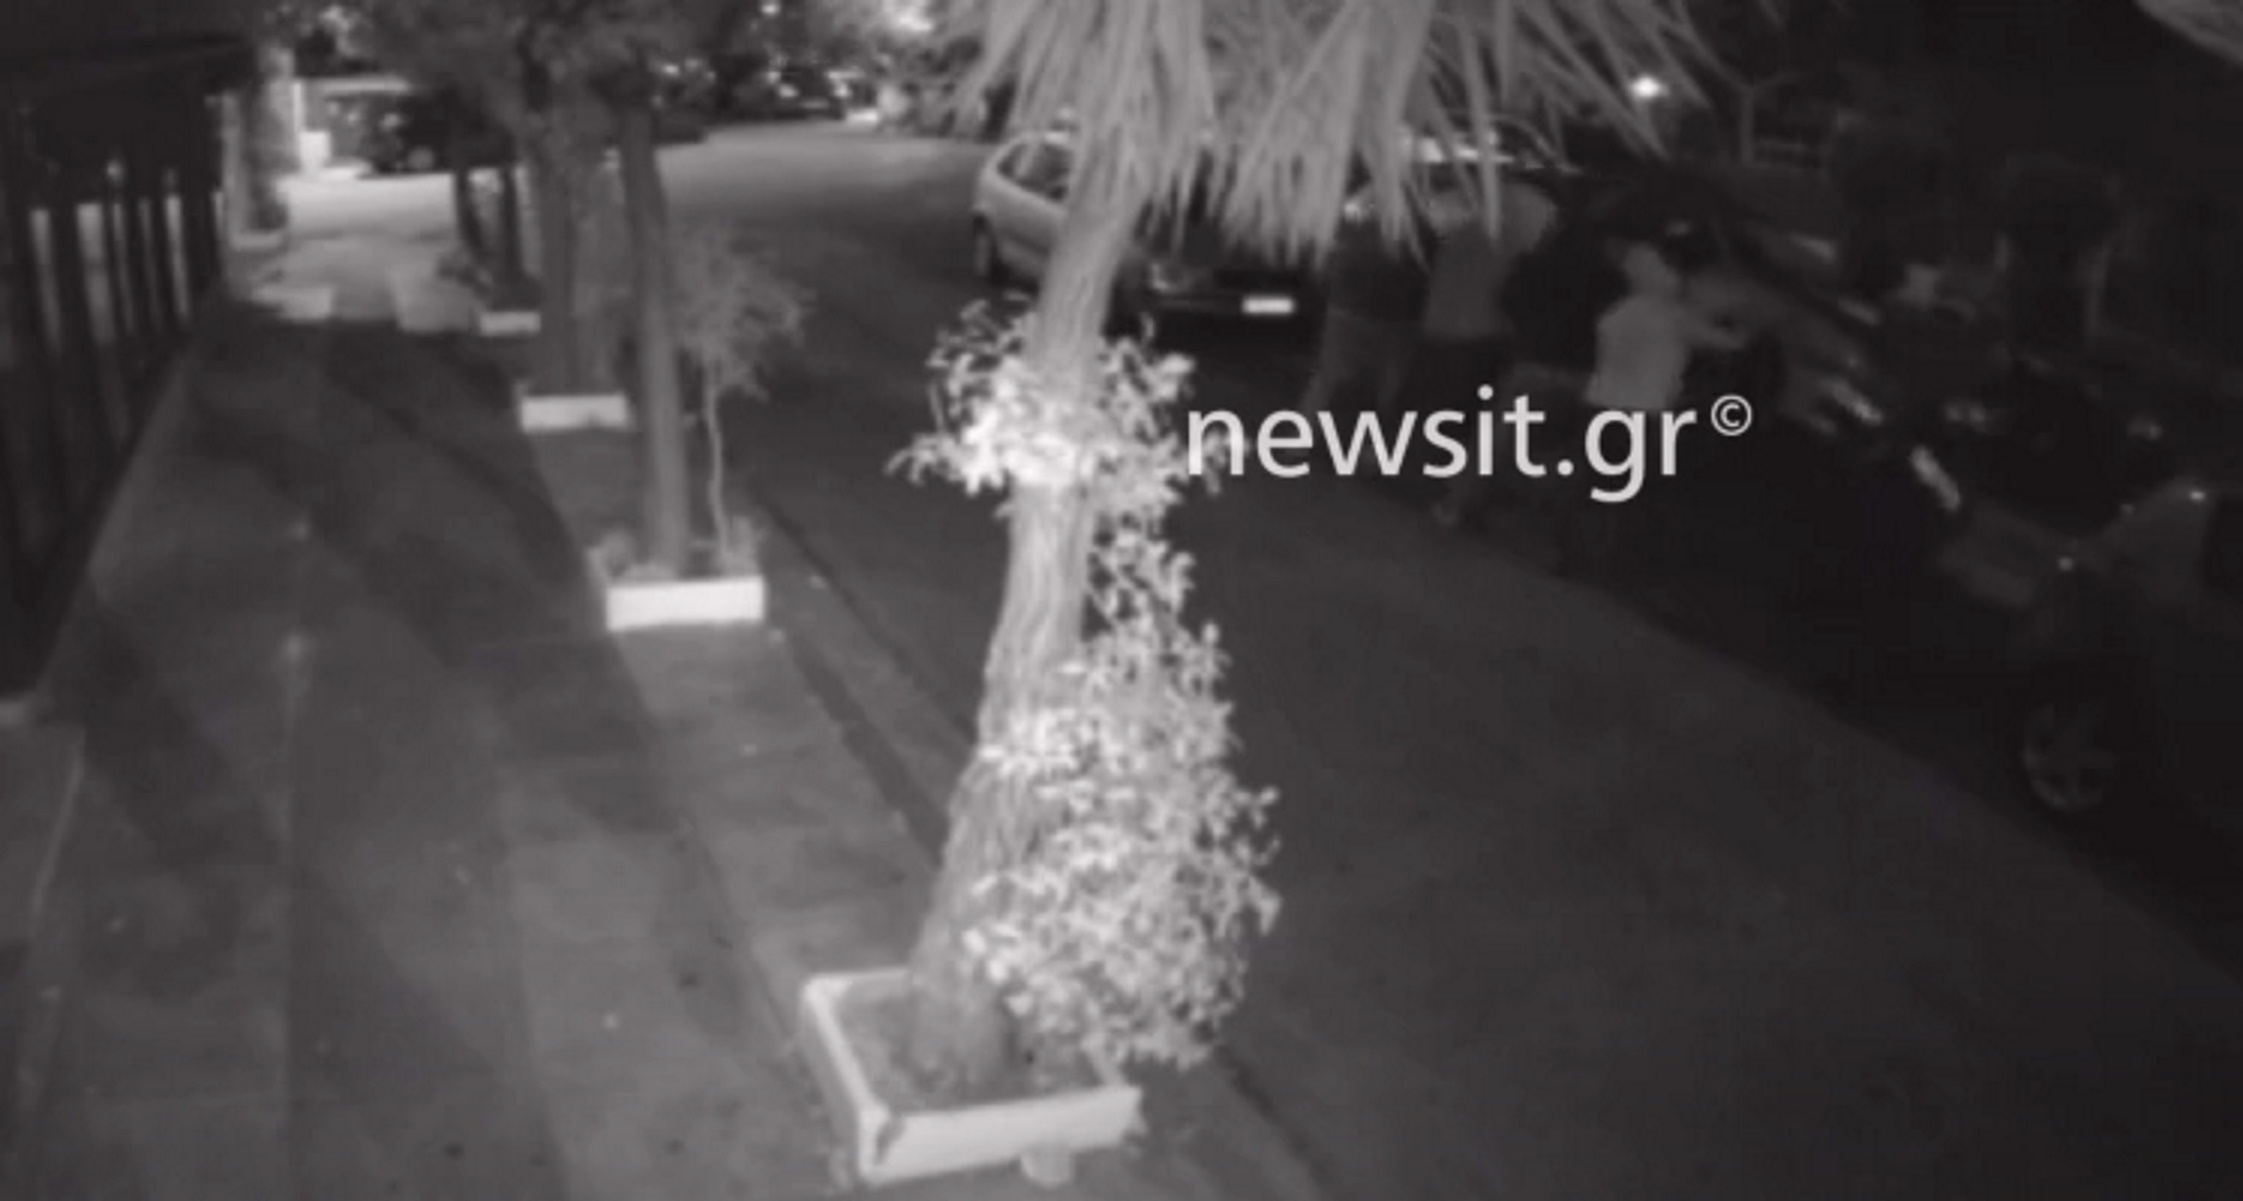 Βίντεο ντοκουμέντο από σπείρα που κλέβει εξατμίσεις αυτοκινήτων